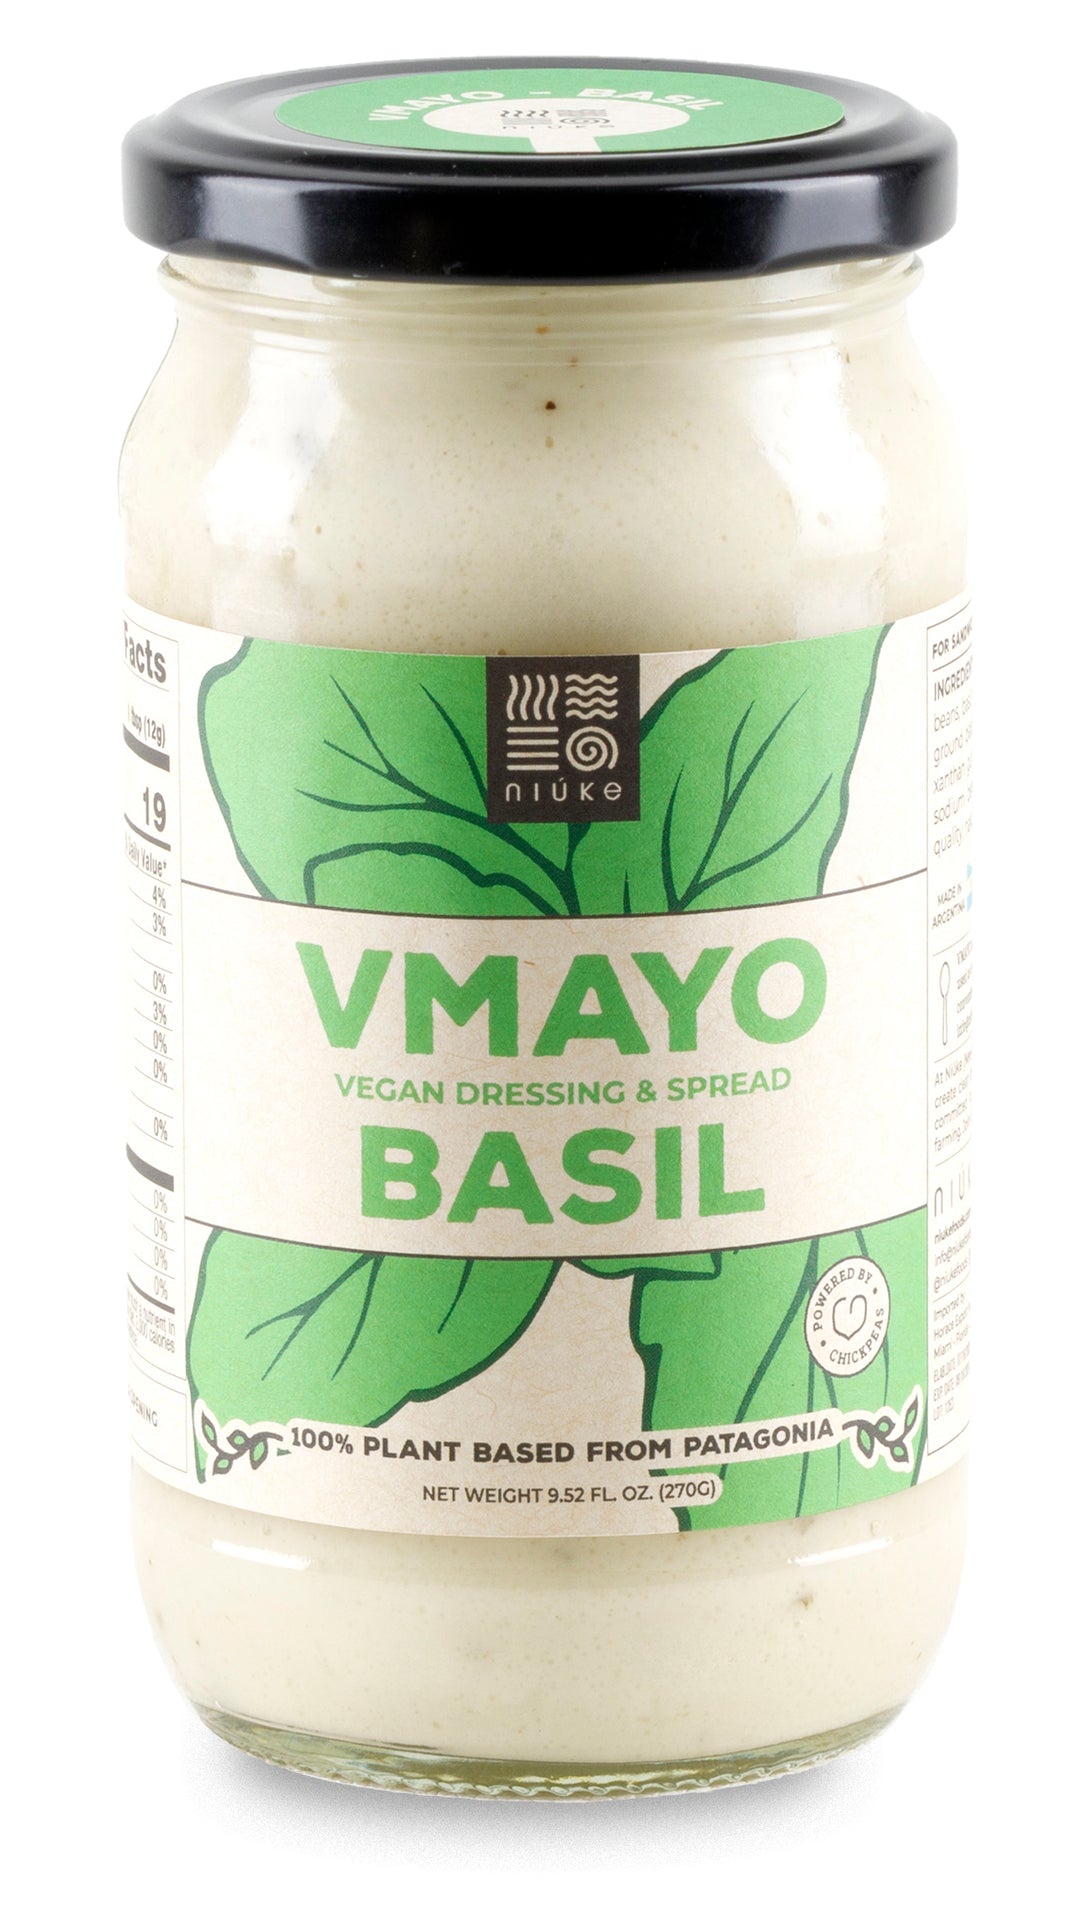 BASIL Vegan Mayo